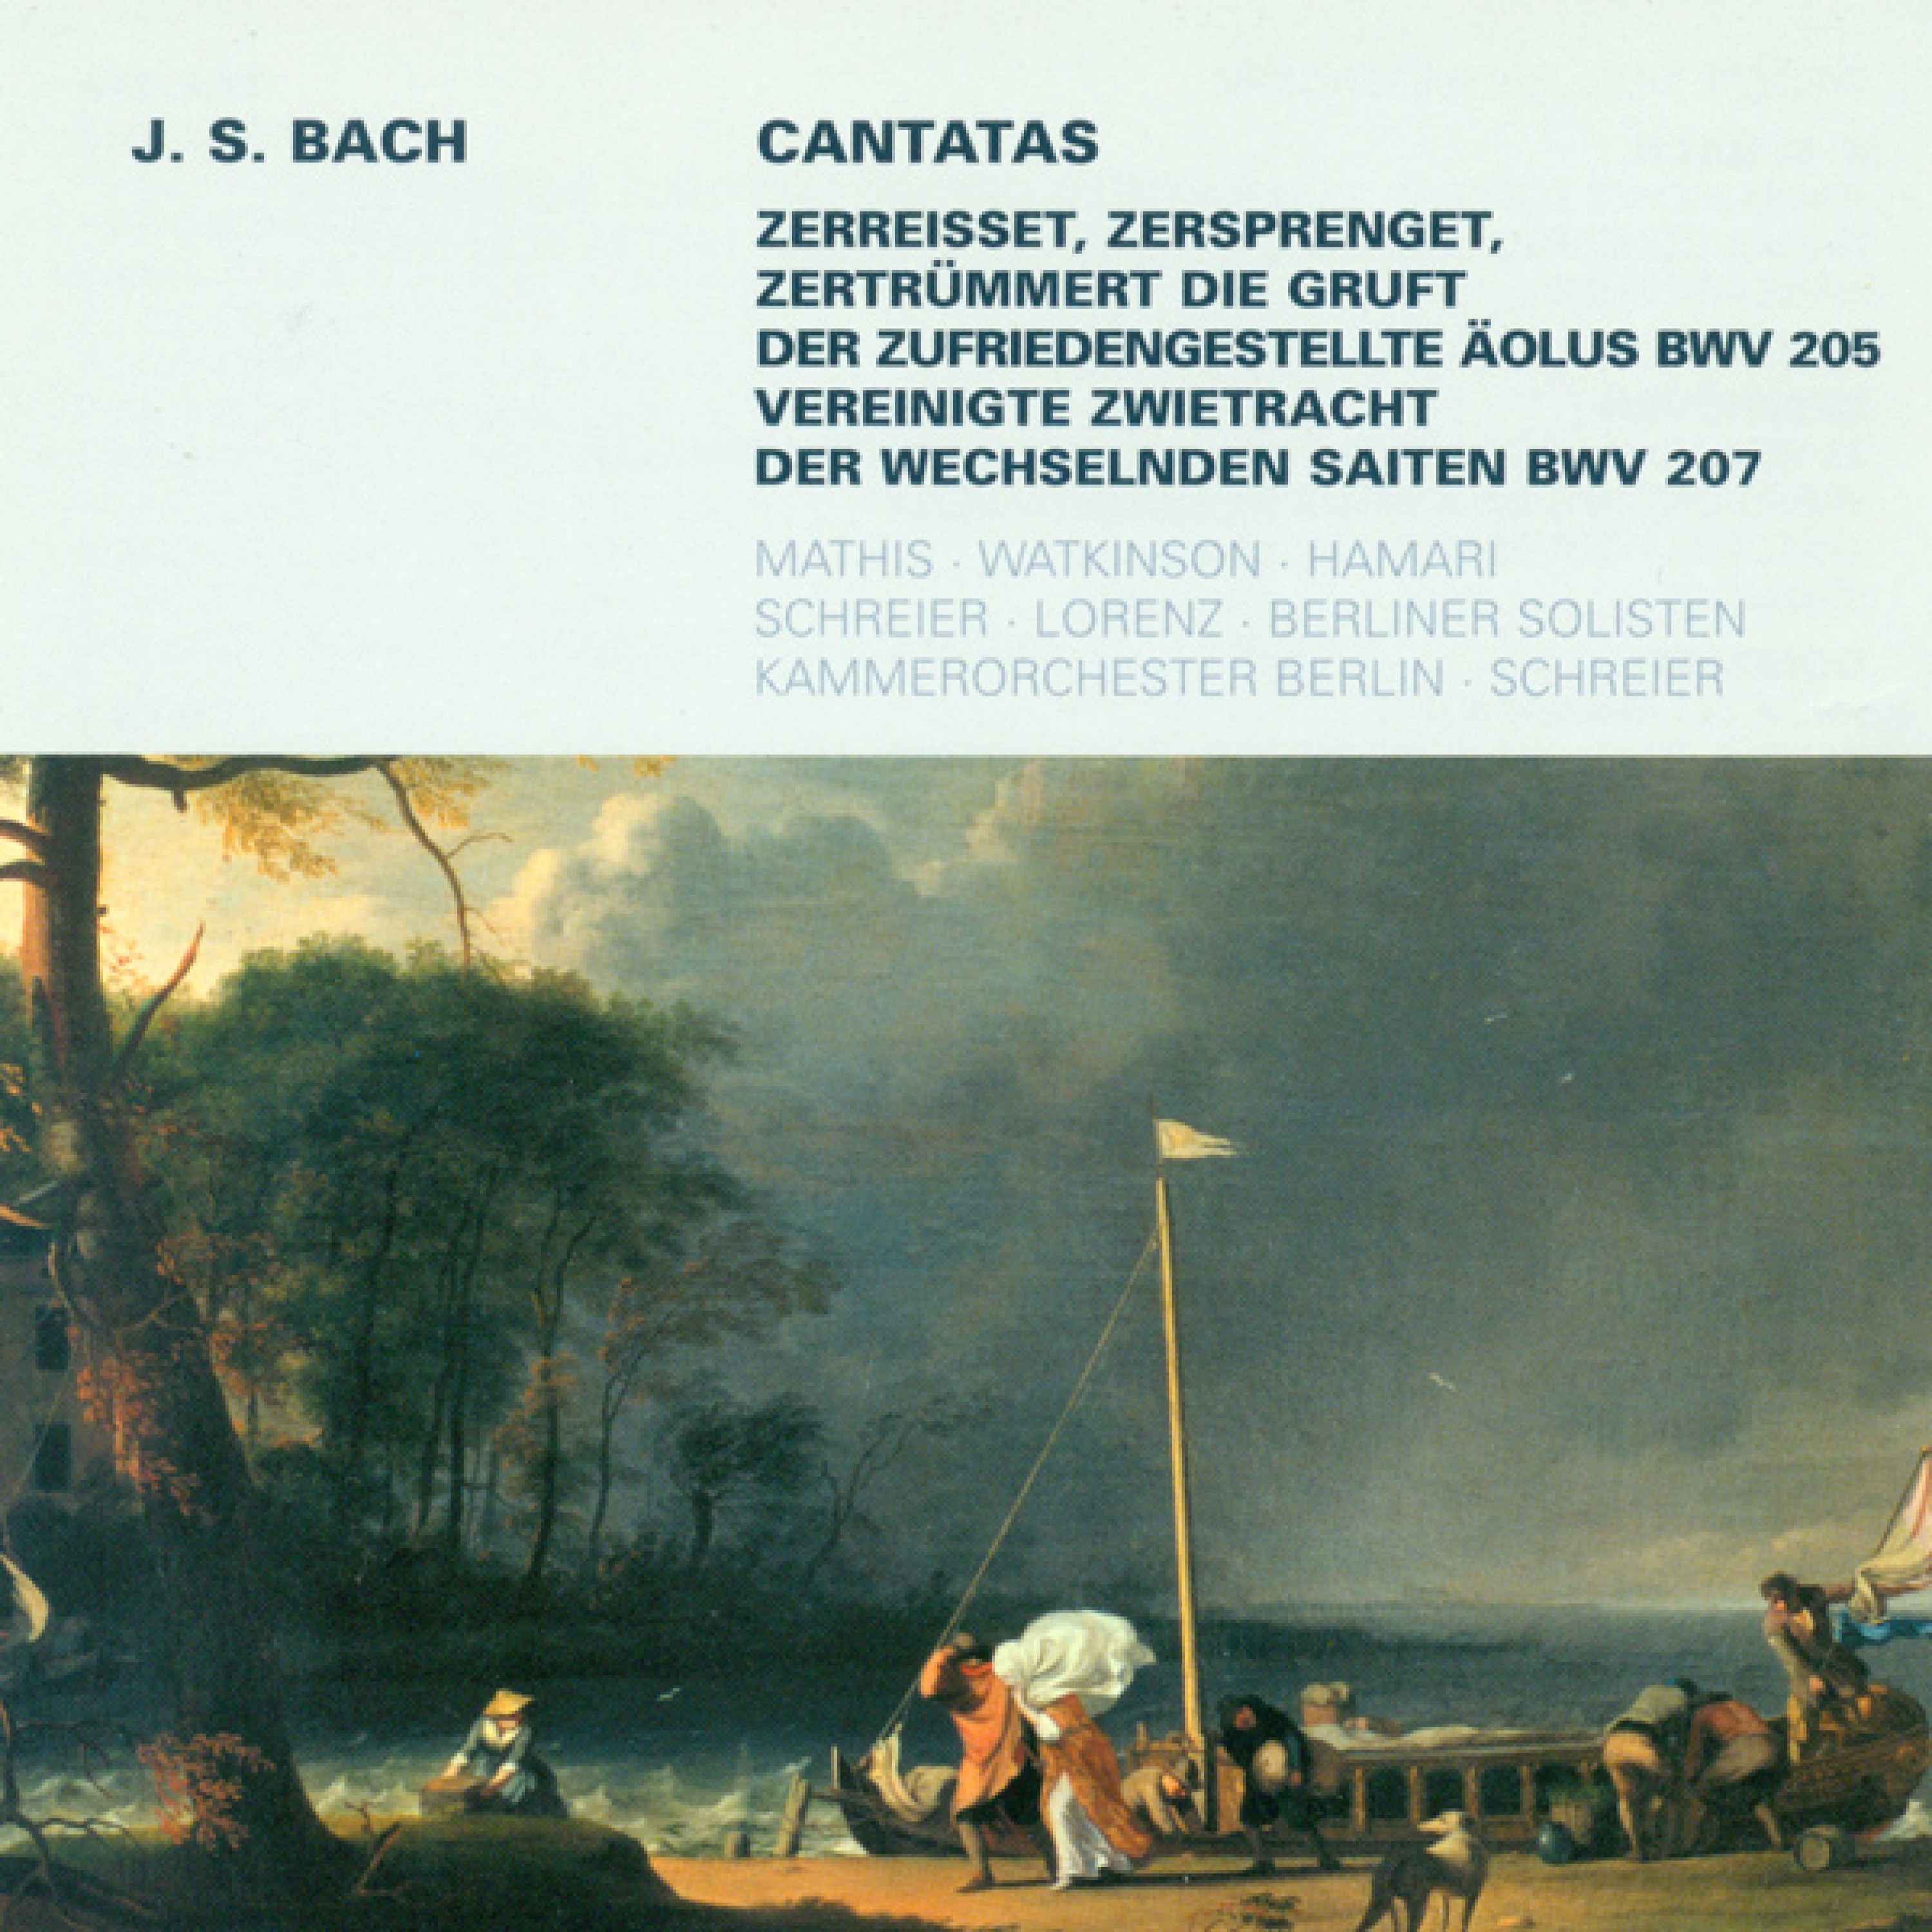 Vereinigte Zwietracht der wechselnden Saiten, BWV 207: Recitative: Ihr Schlafrigen, herbei! (Tenor, Bass, Soprano, Alto)